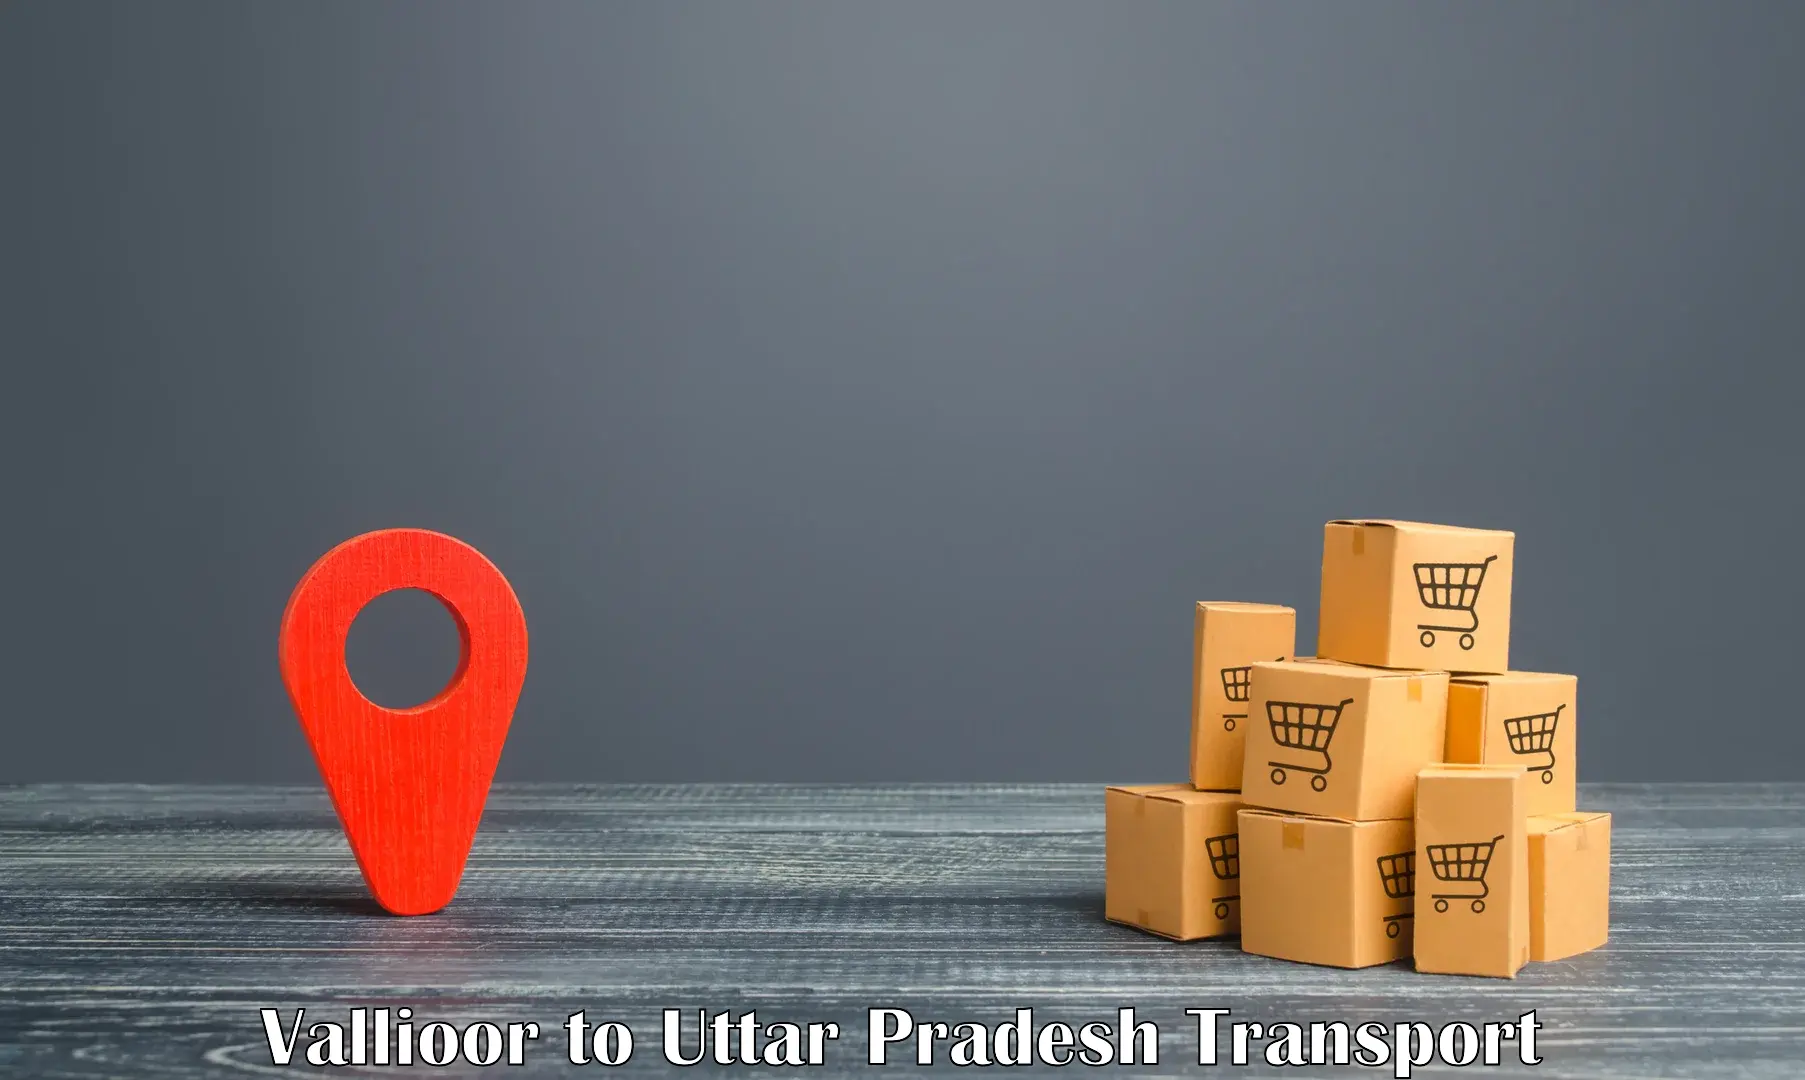 Online transport service Vallioor to Uttar Pradesh